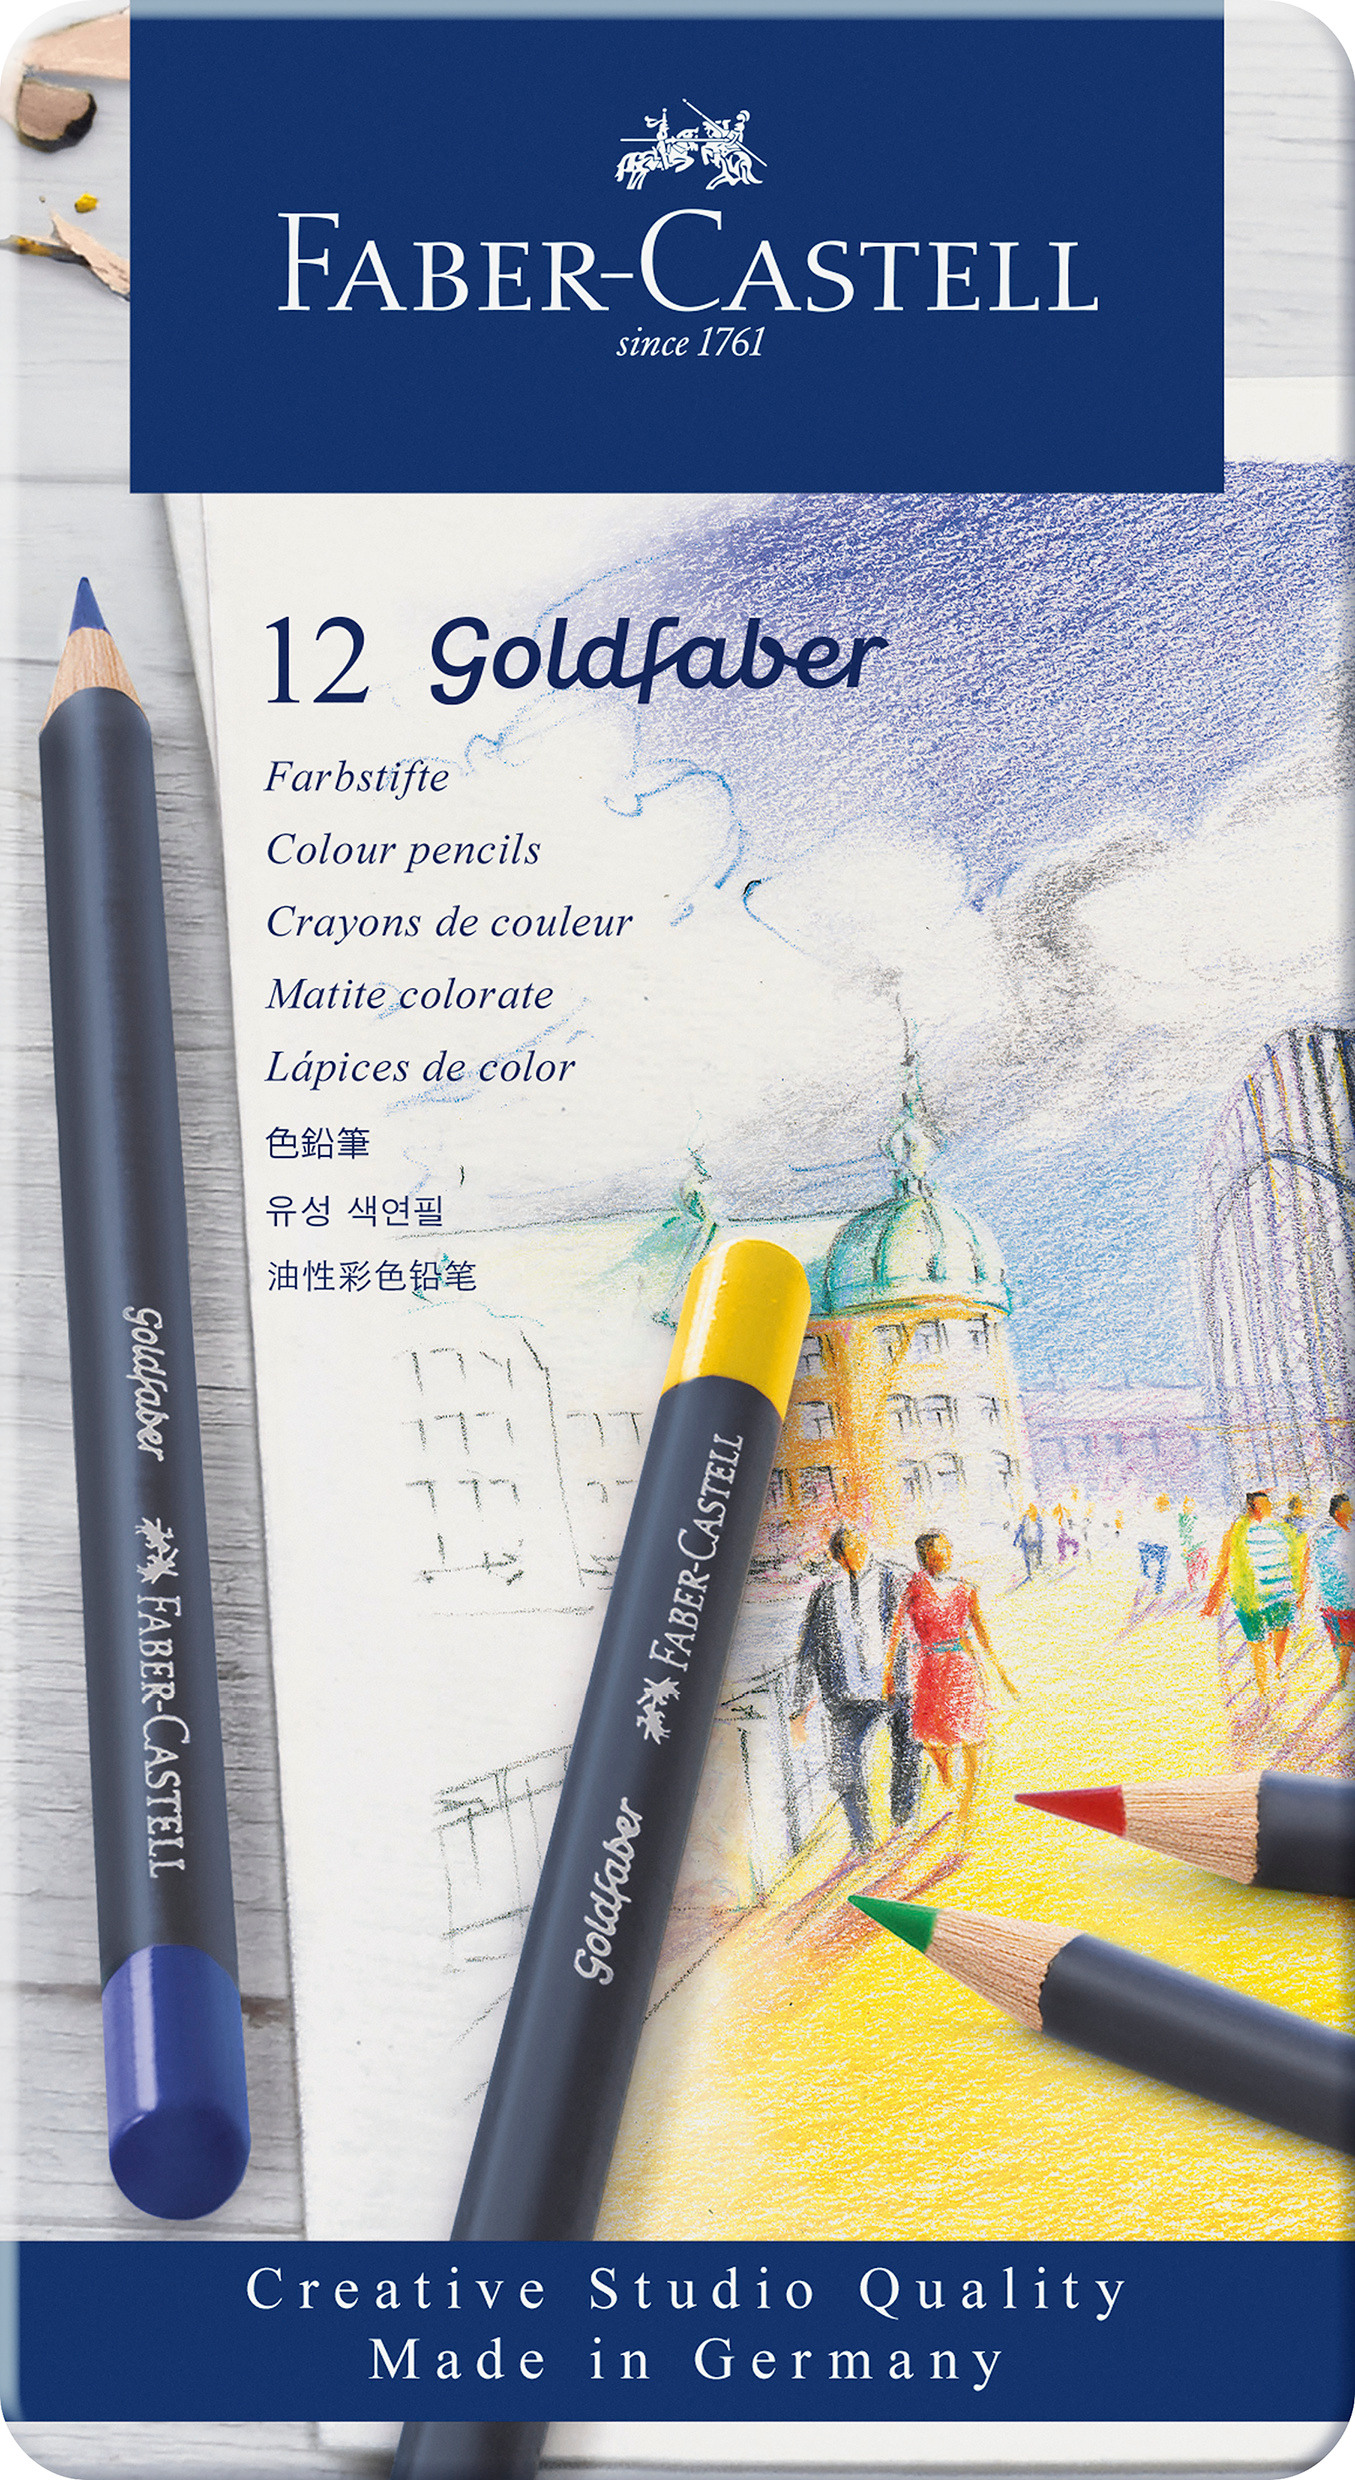 FABER-CASTELL Goldfaber crayon de couleur 114712 boîte métal à 12 pcs.